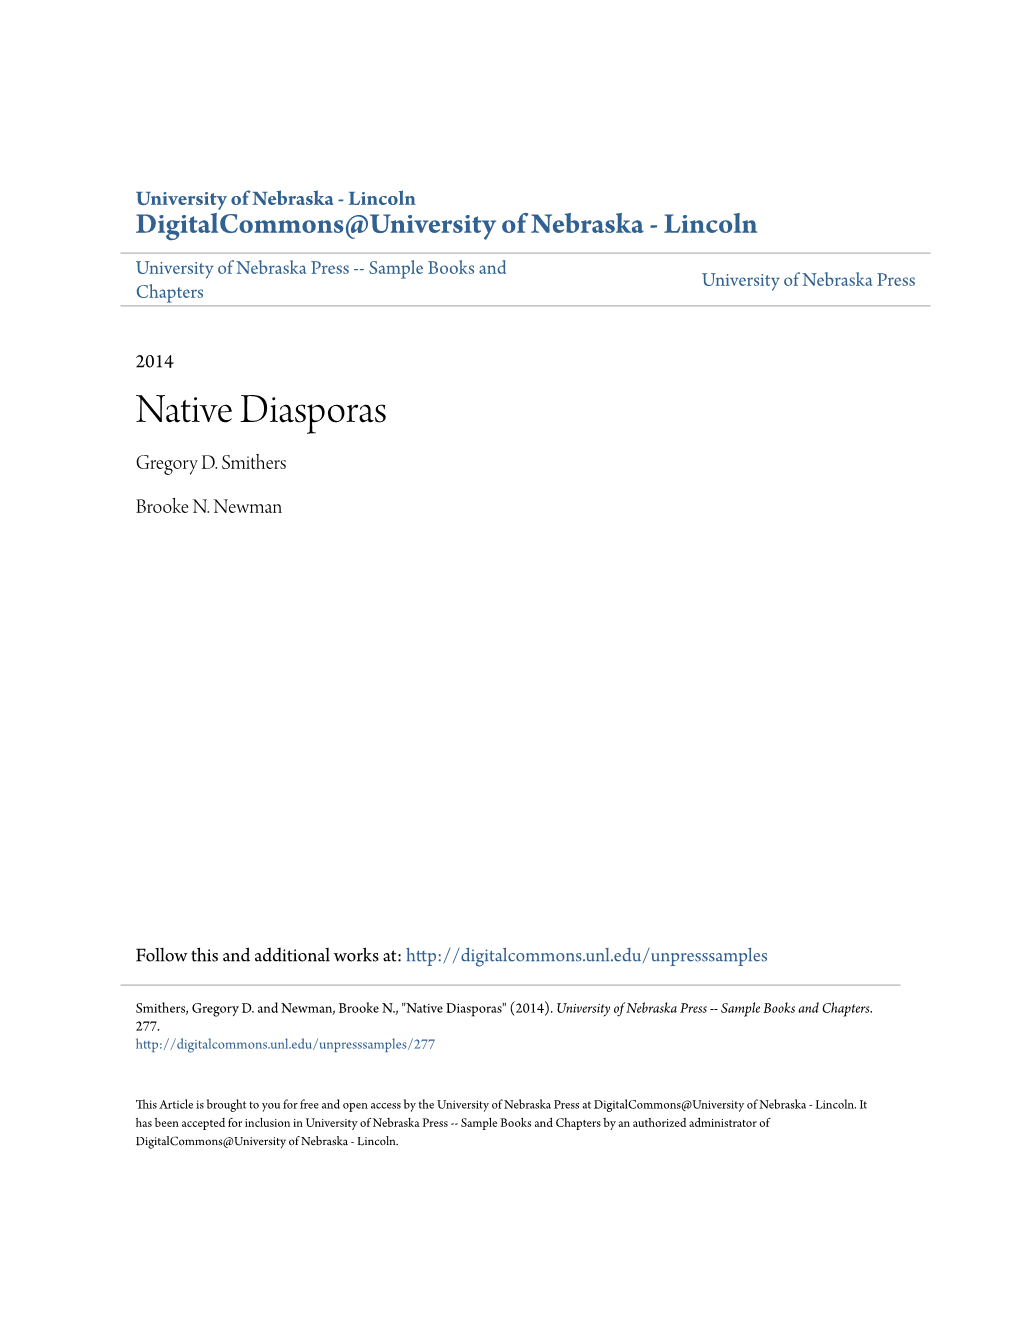 Native Diasporas Gregory D